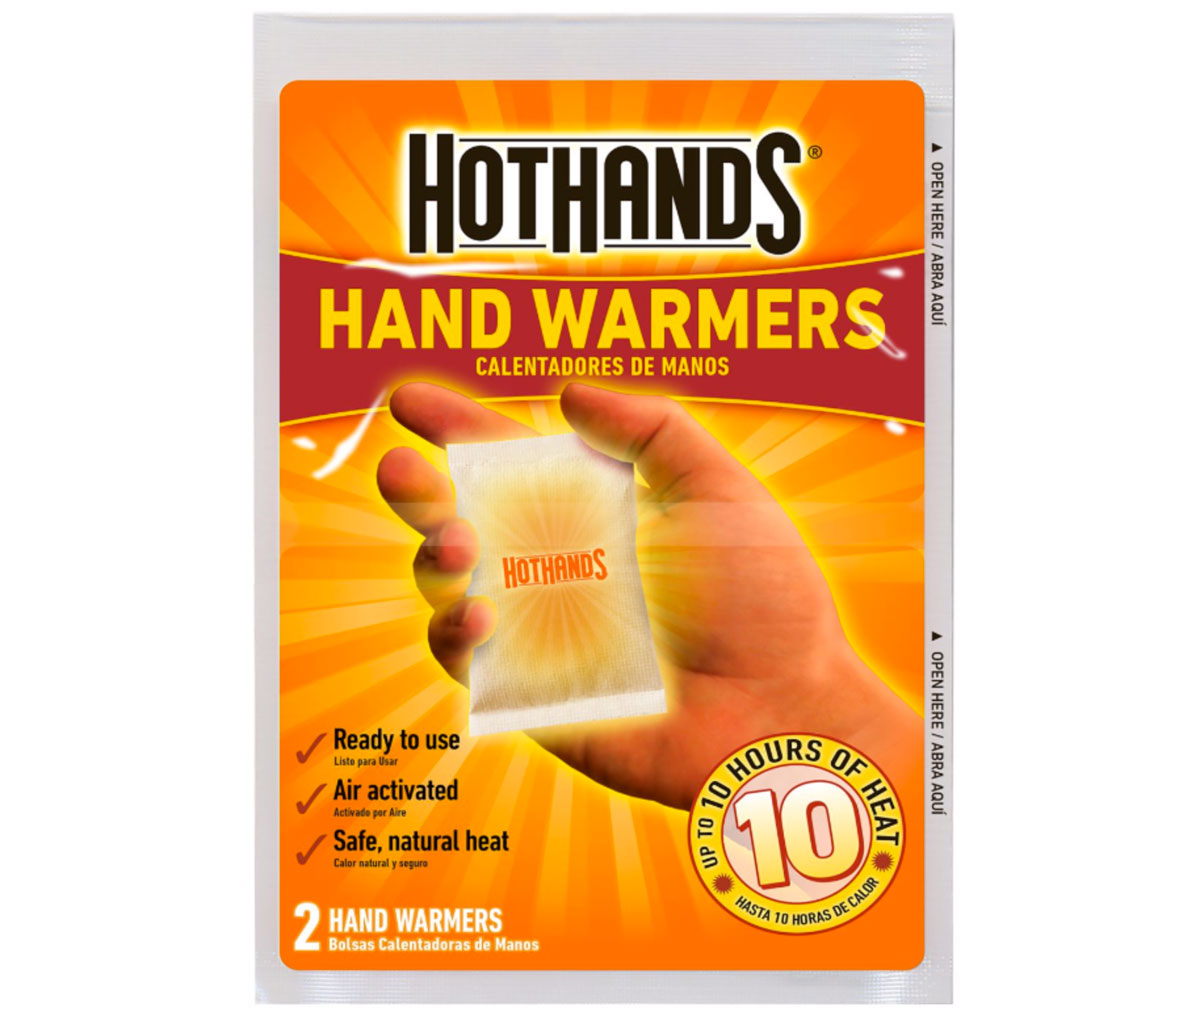 handwarmer packets